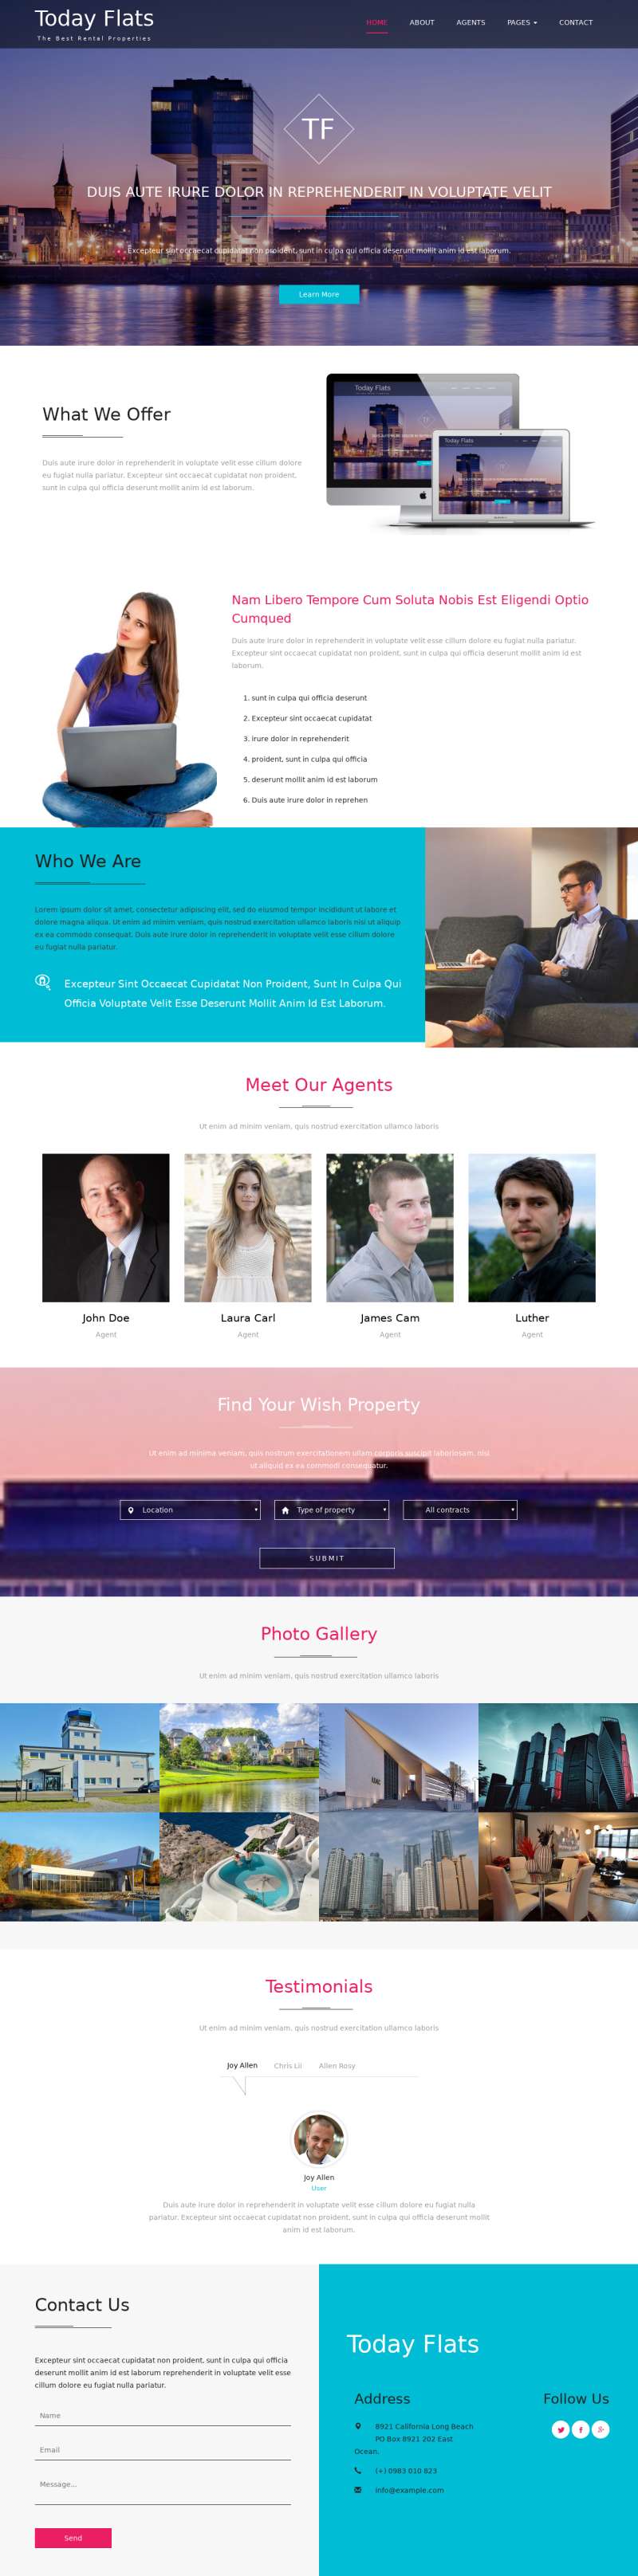 大气宽屏HTML公寓房地产网站单页模板